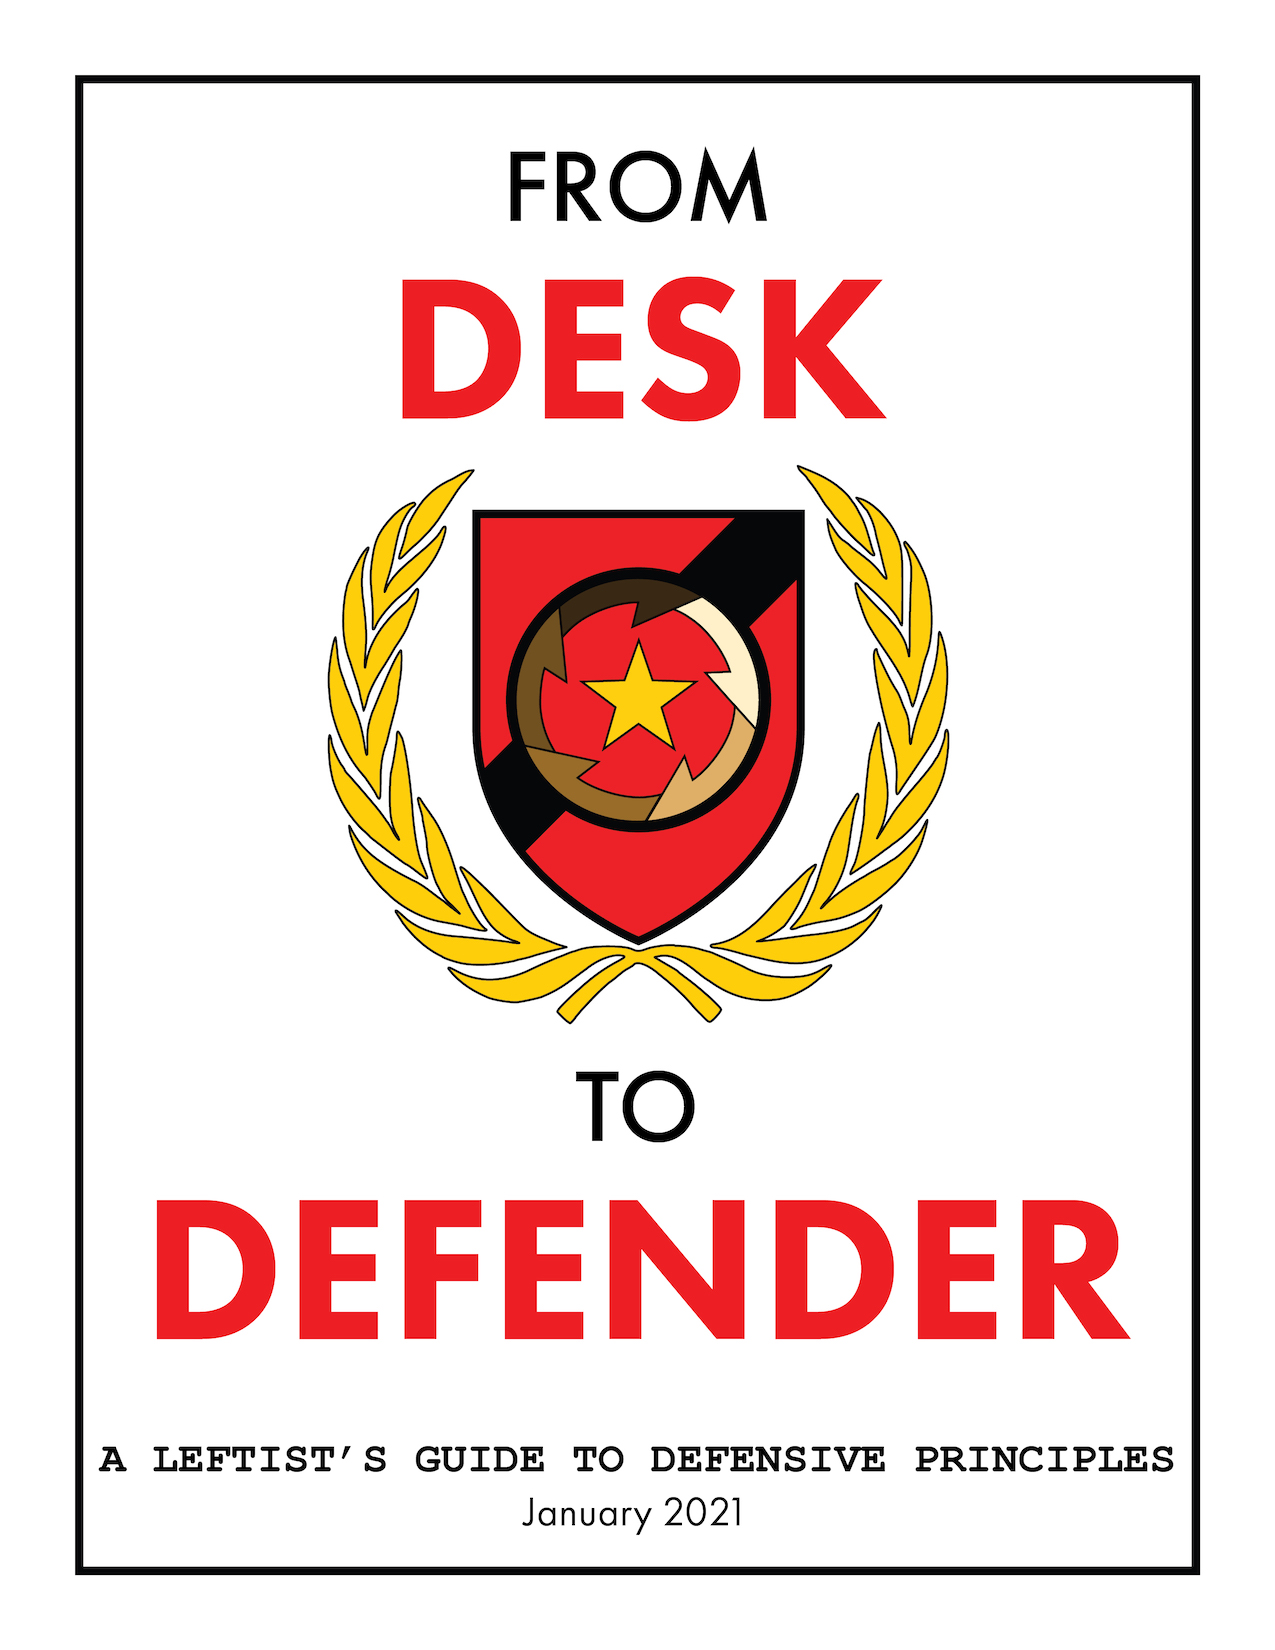 Download Desk to Defender manual